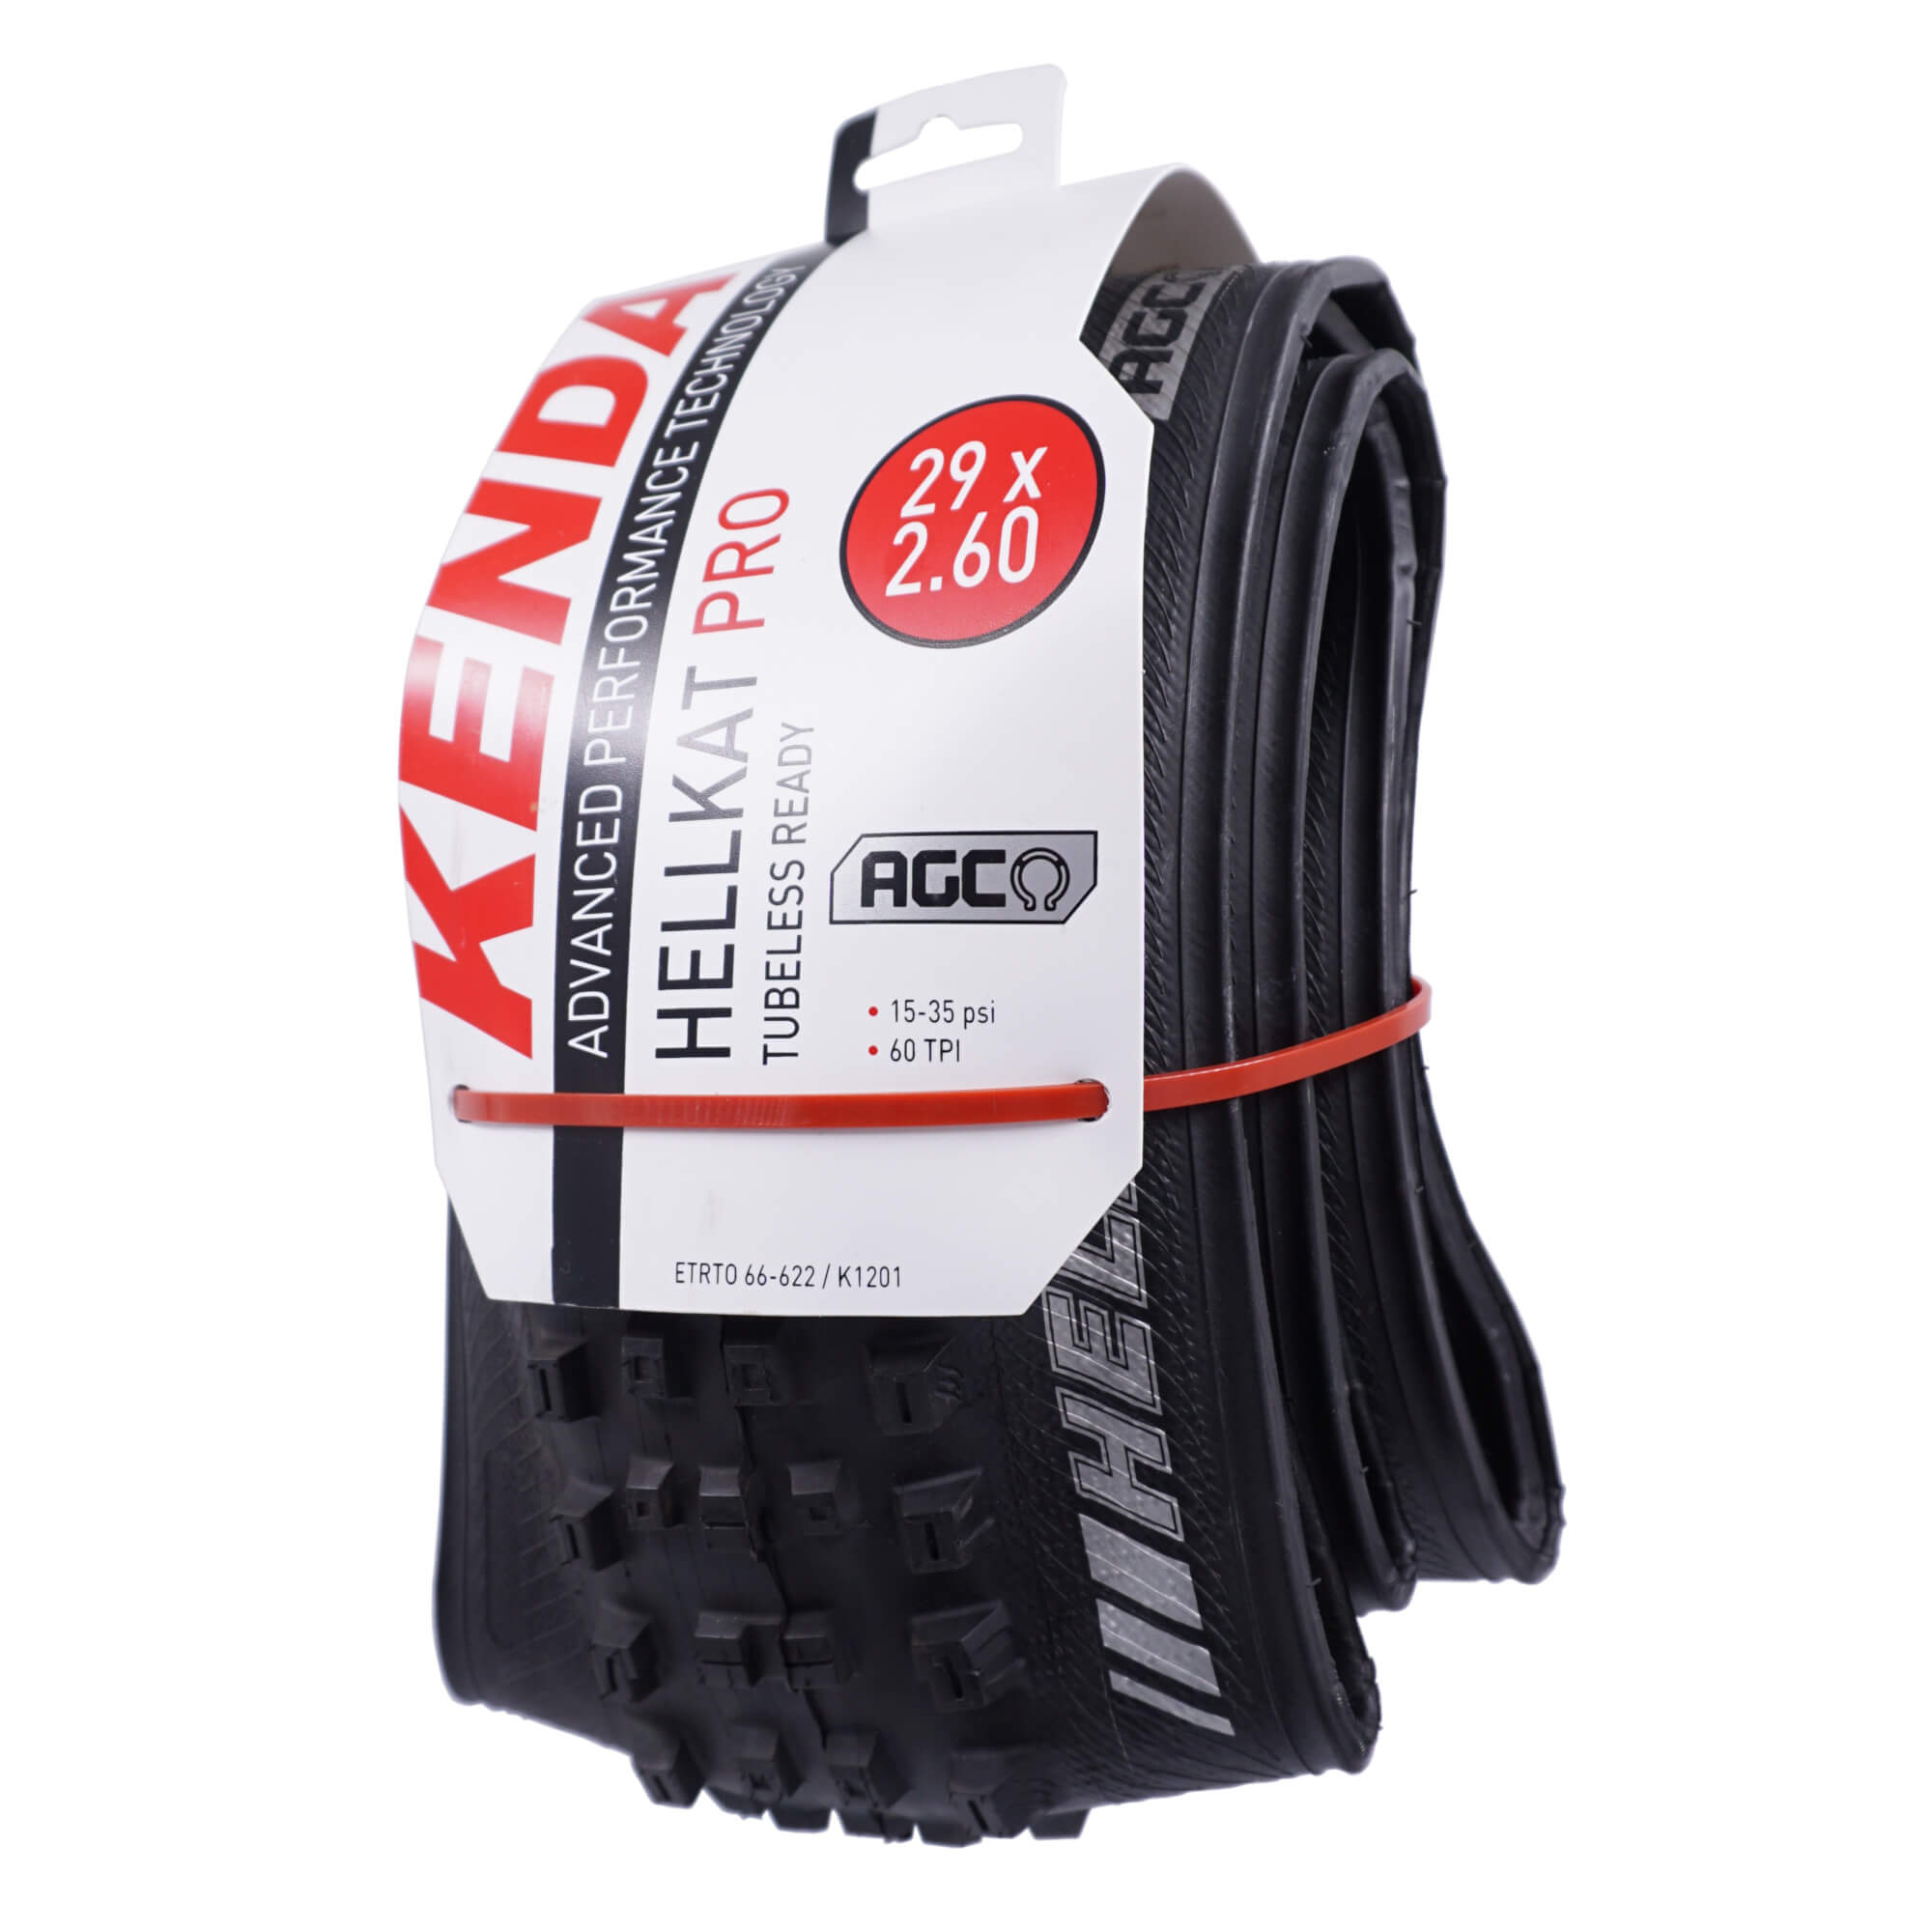 Kenda K1201 Hellkat 29x2.60 Tubeless Tire AGC TPI: 60 - The Bikesmiths